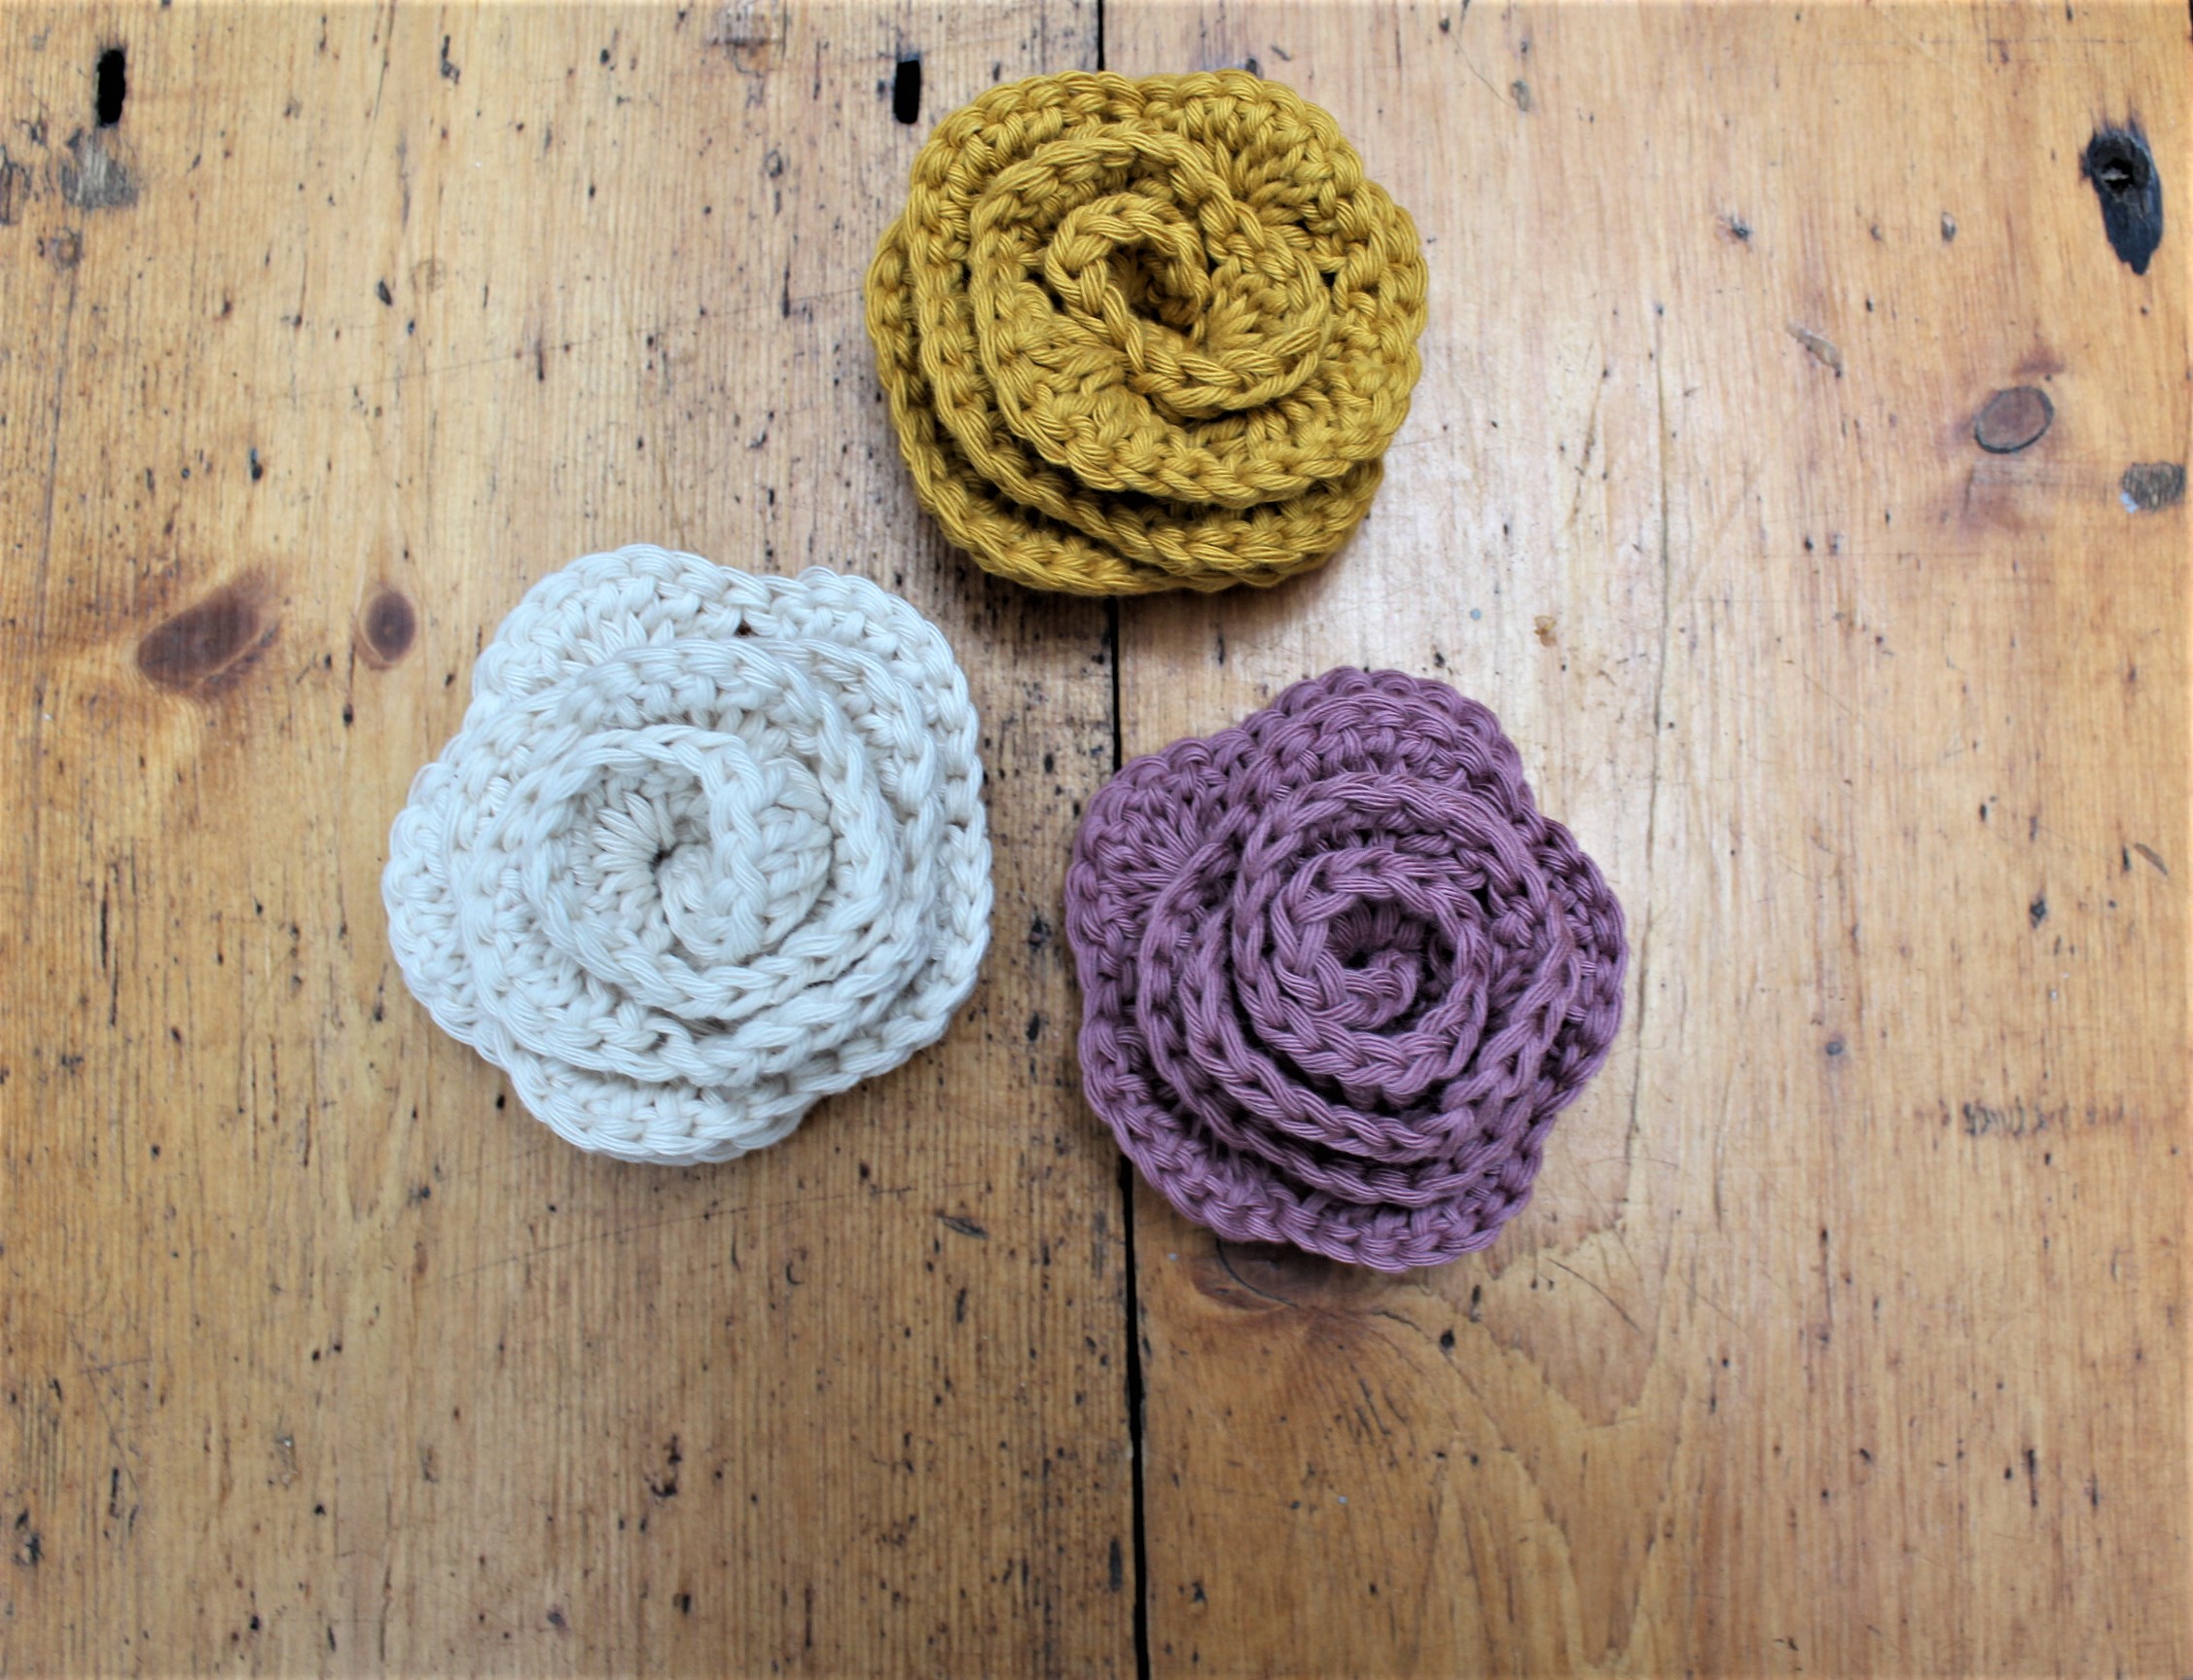 Crochet Sewing & Fiber 9 Crochet Flower Pattern Collection Crochet ...